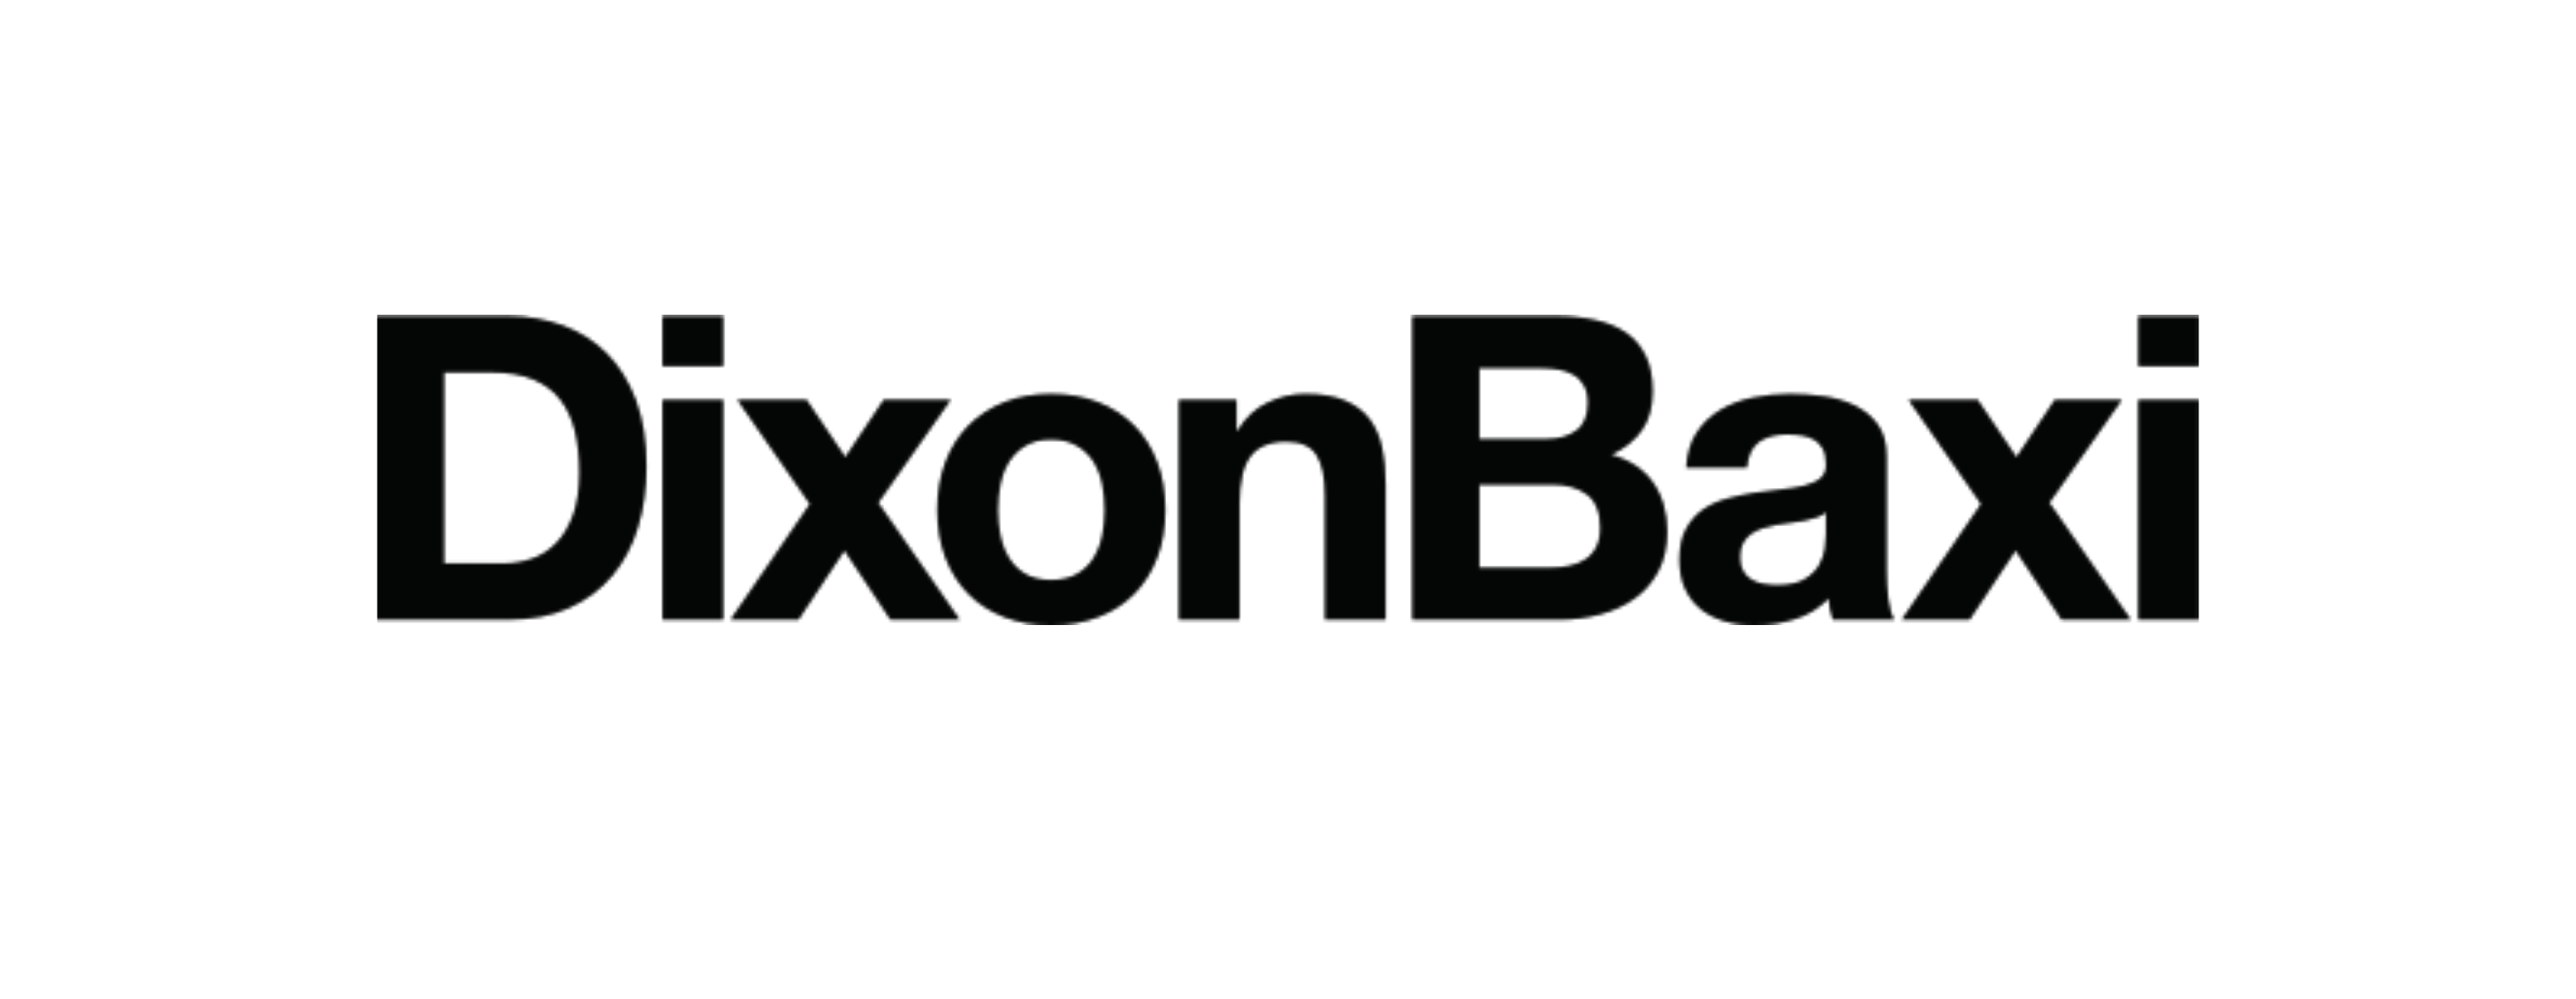 Dixon-Baxi-1